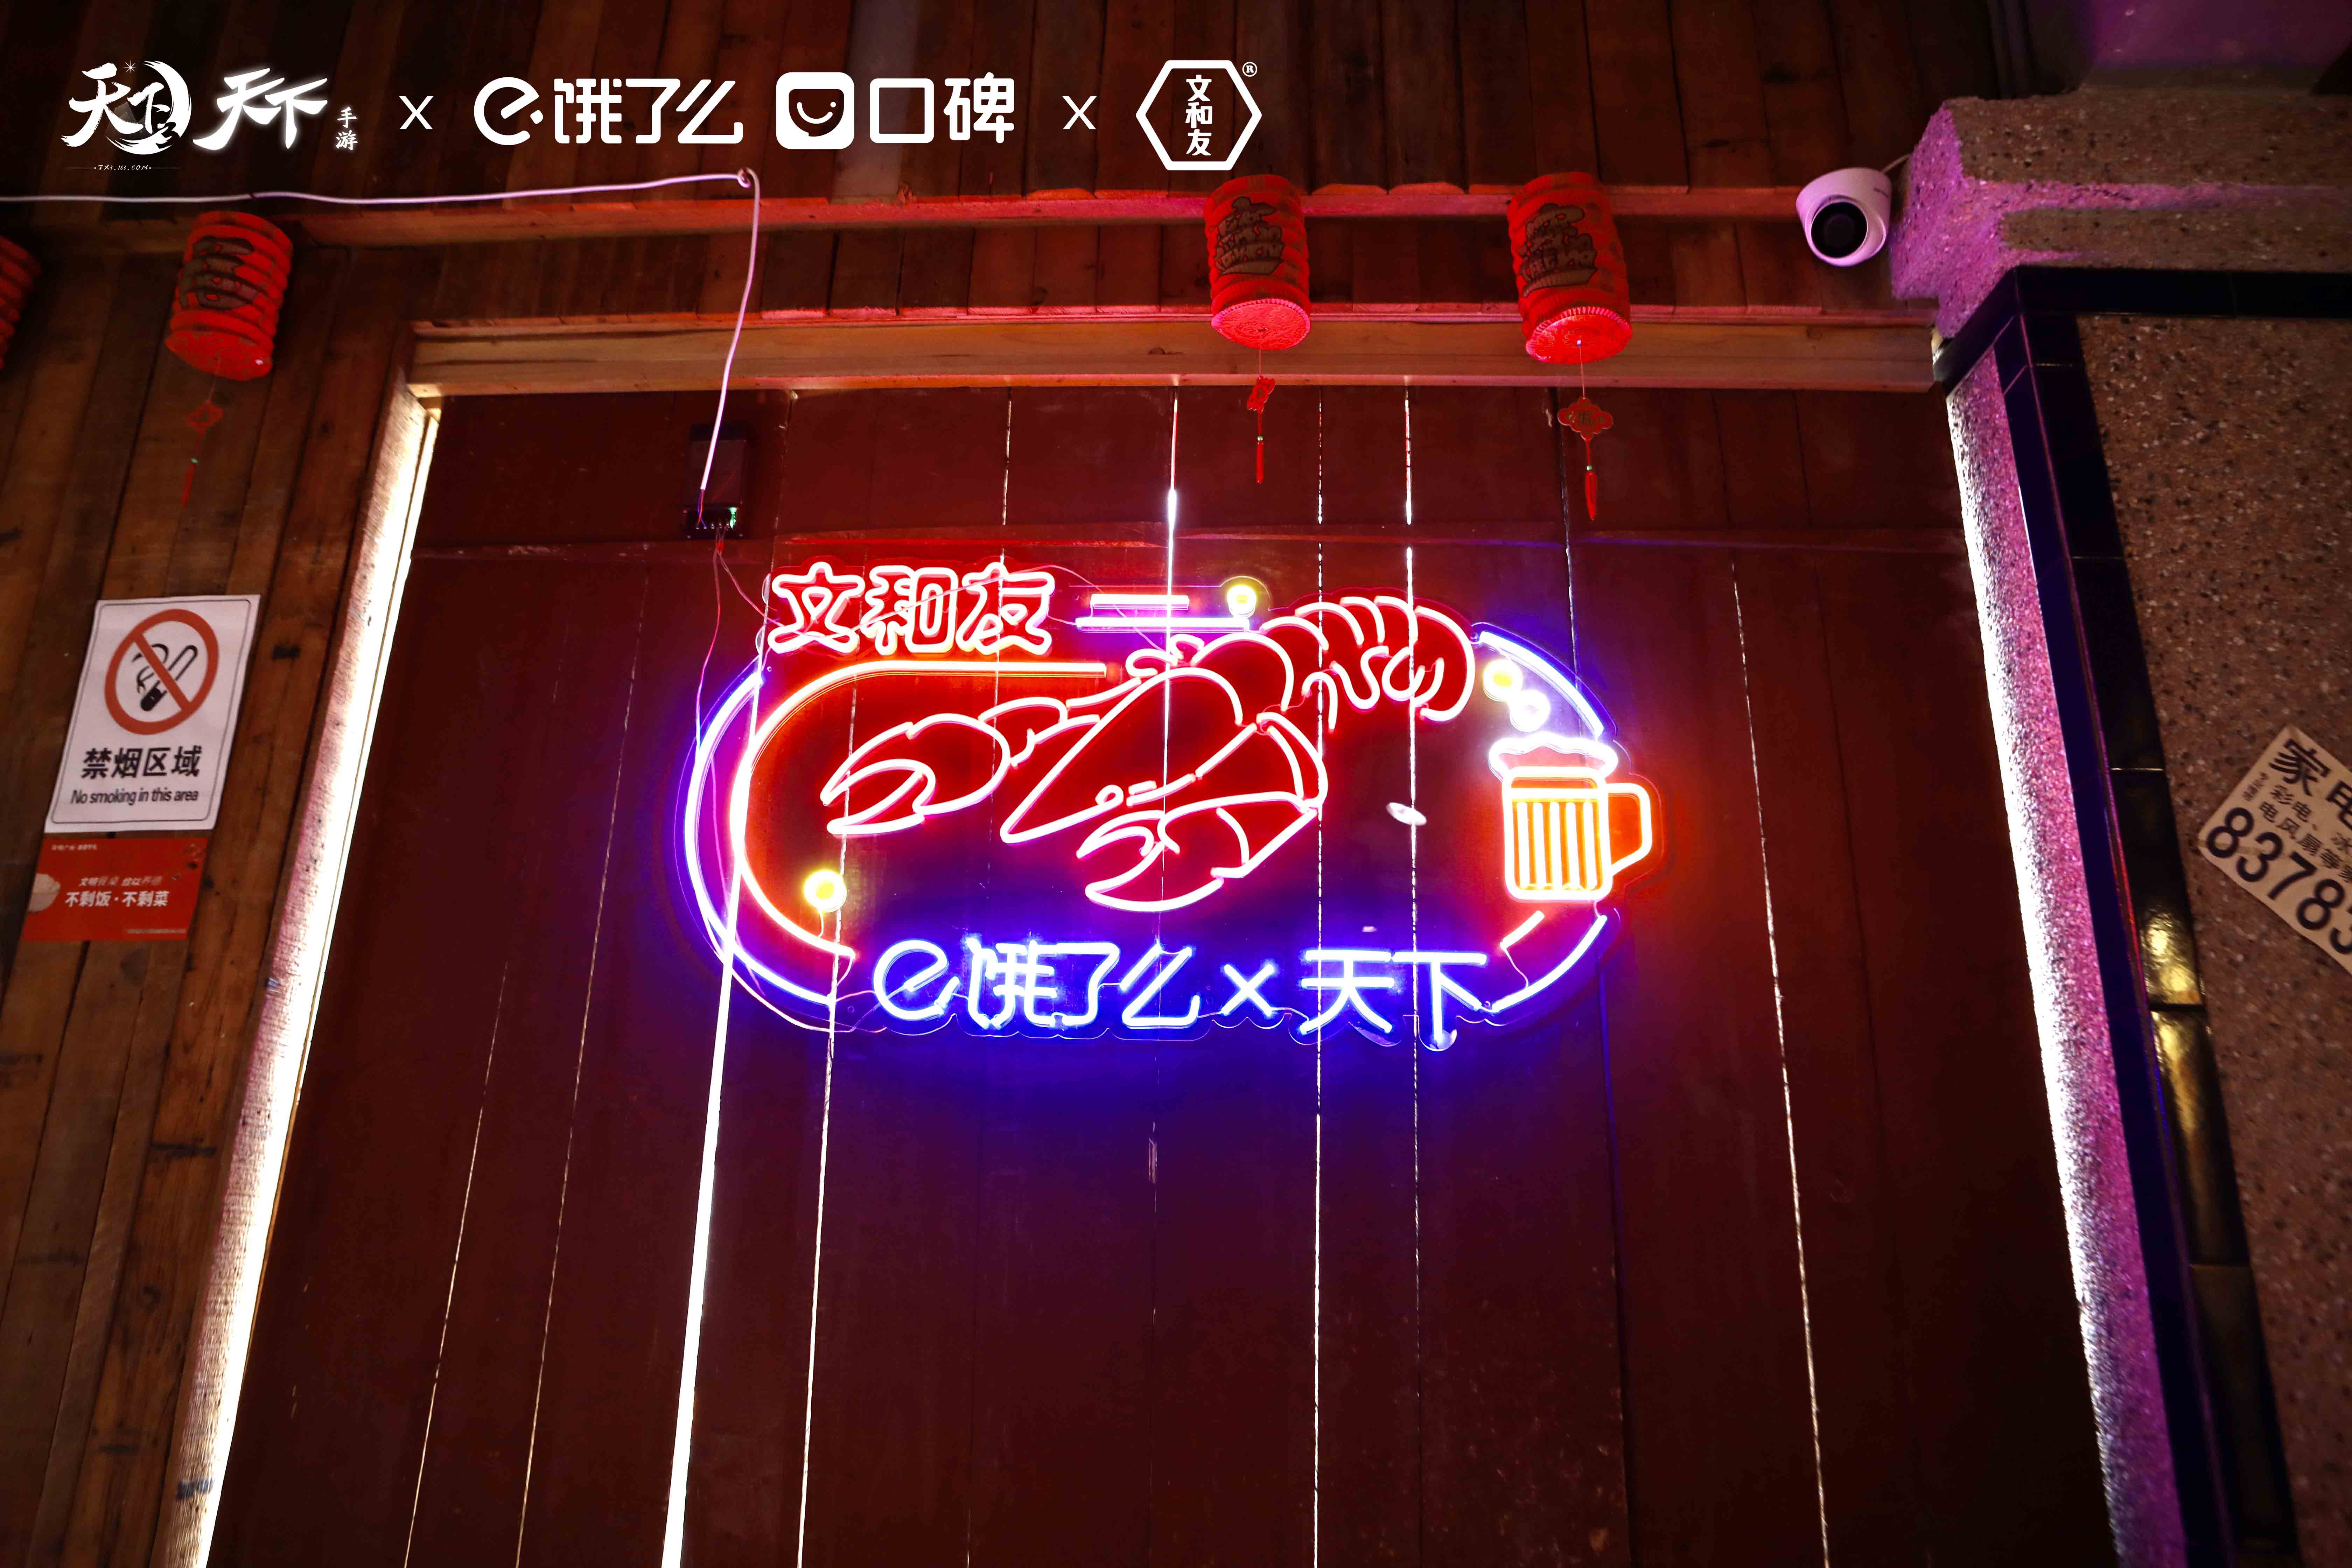 《天下3》系统提示：幽都魔君张凯枫邀您吃小龙虾!少侠是否接受?